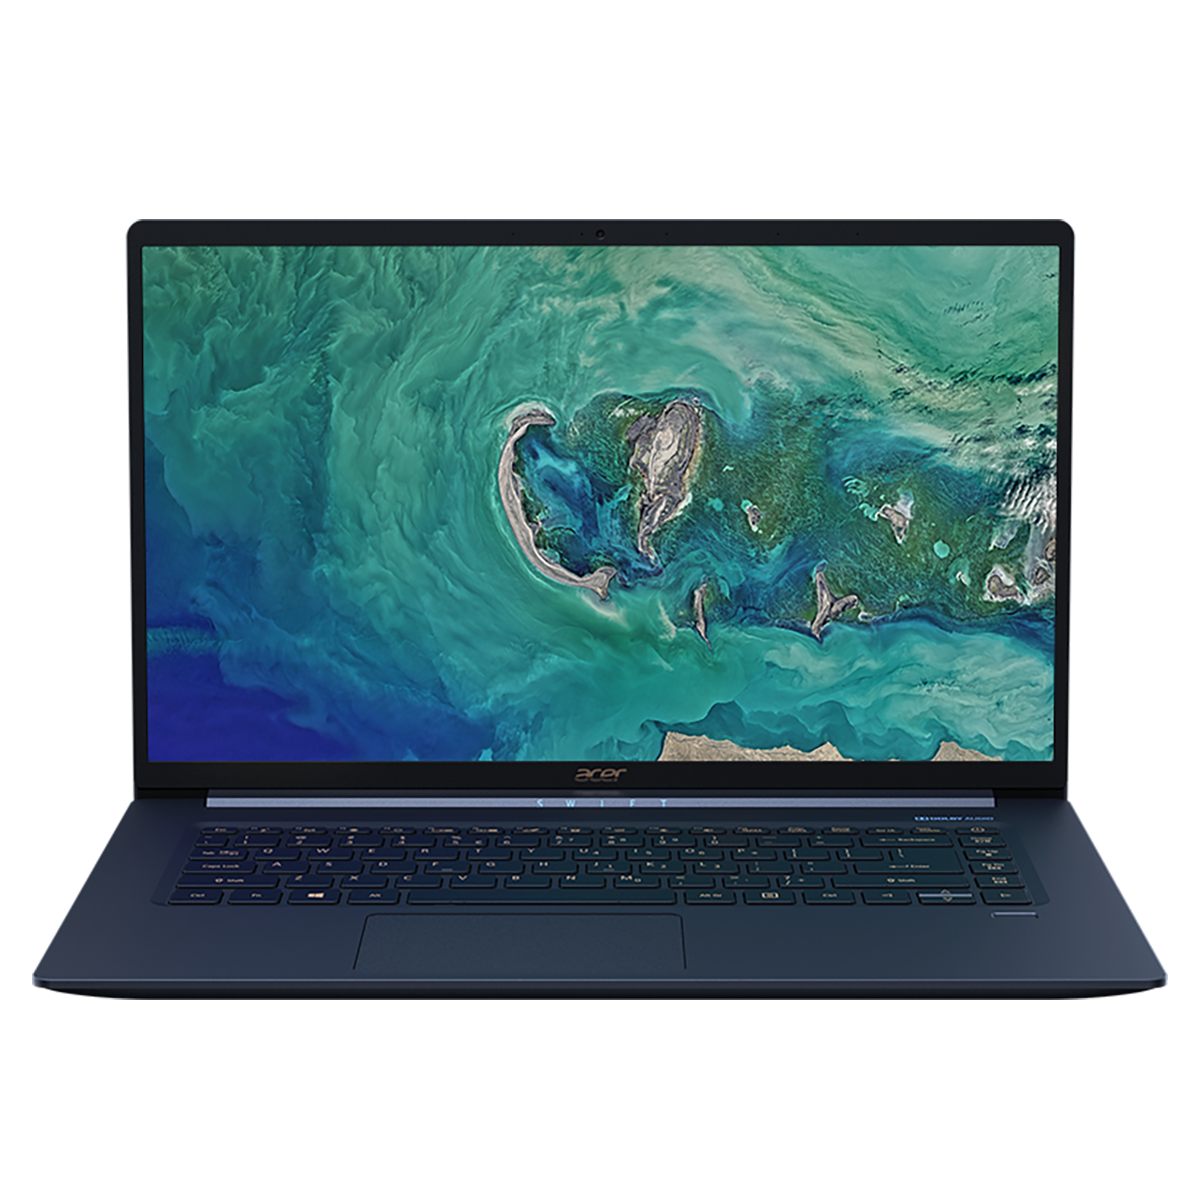 IFA 2018. Najlżejszy laptop 15 cali od Acera i nowości dla graczy